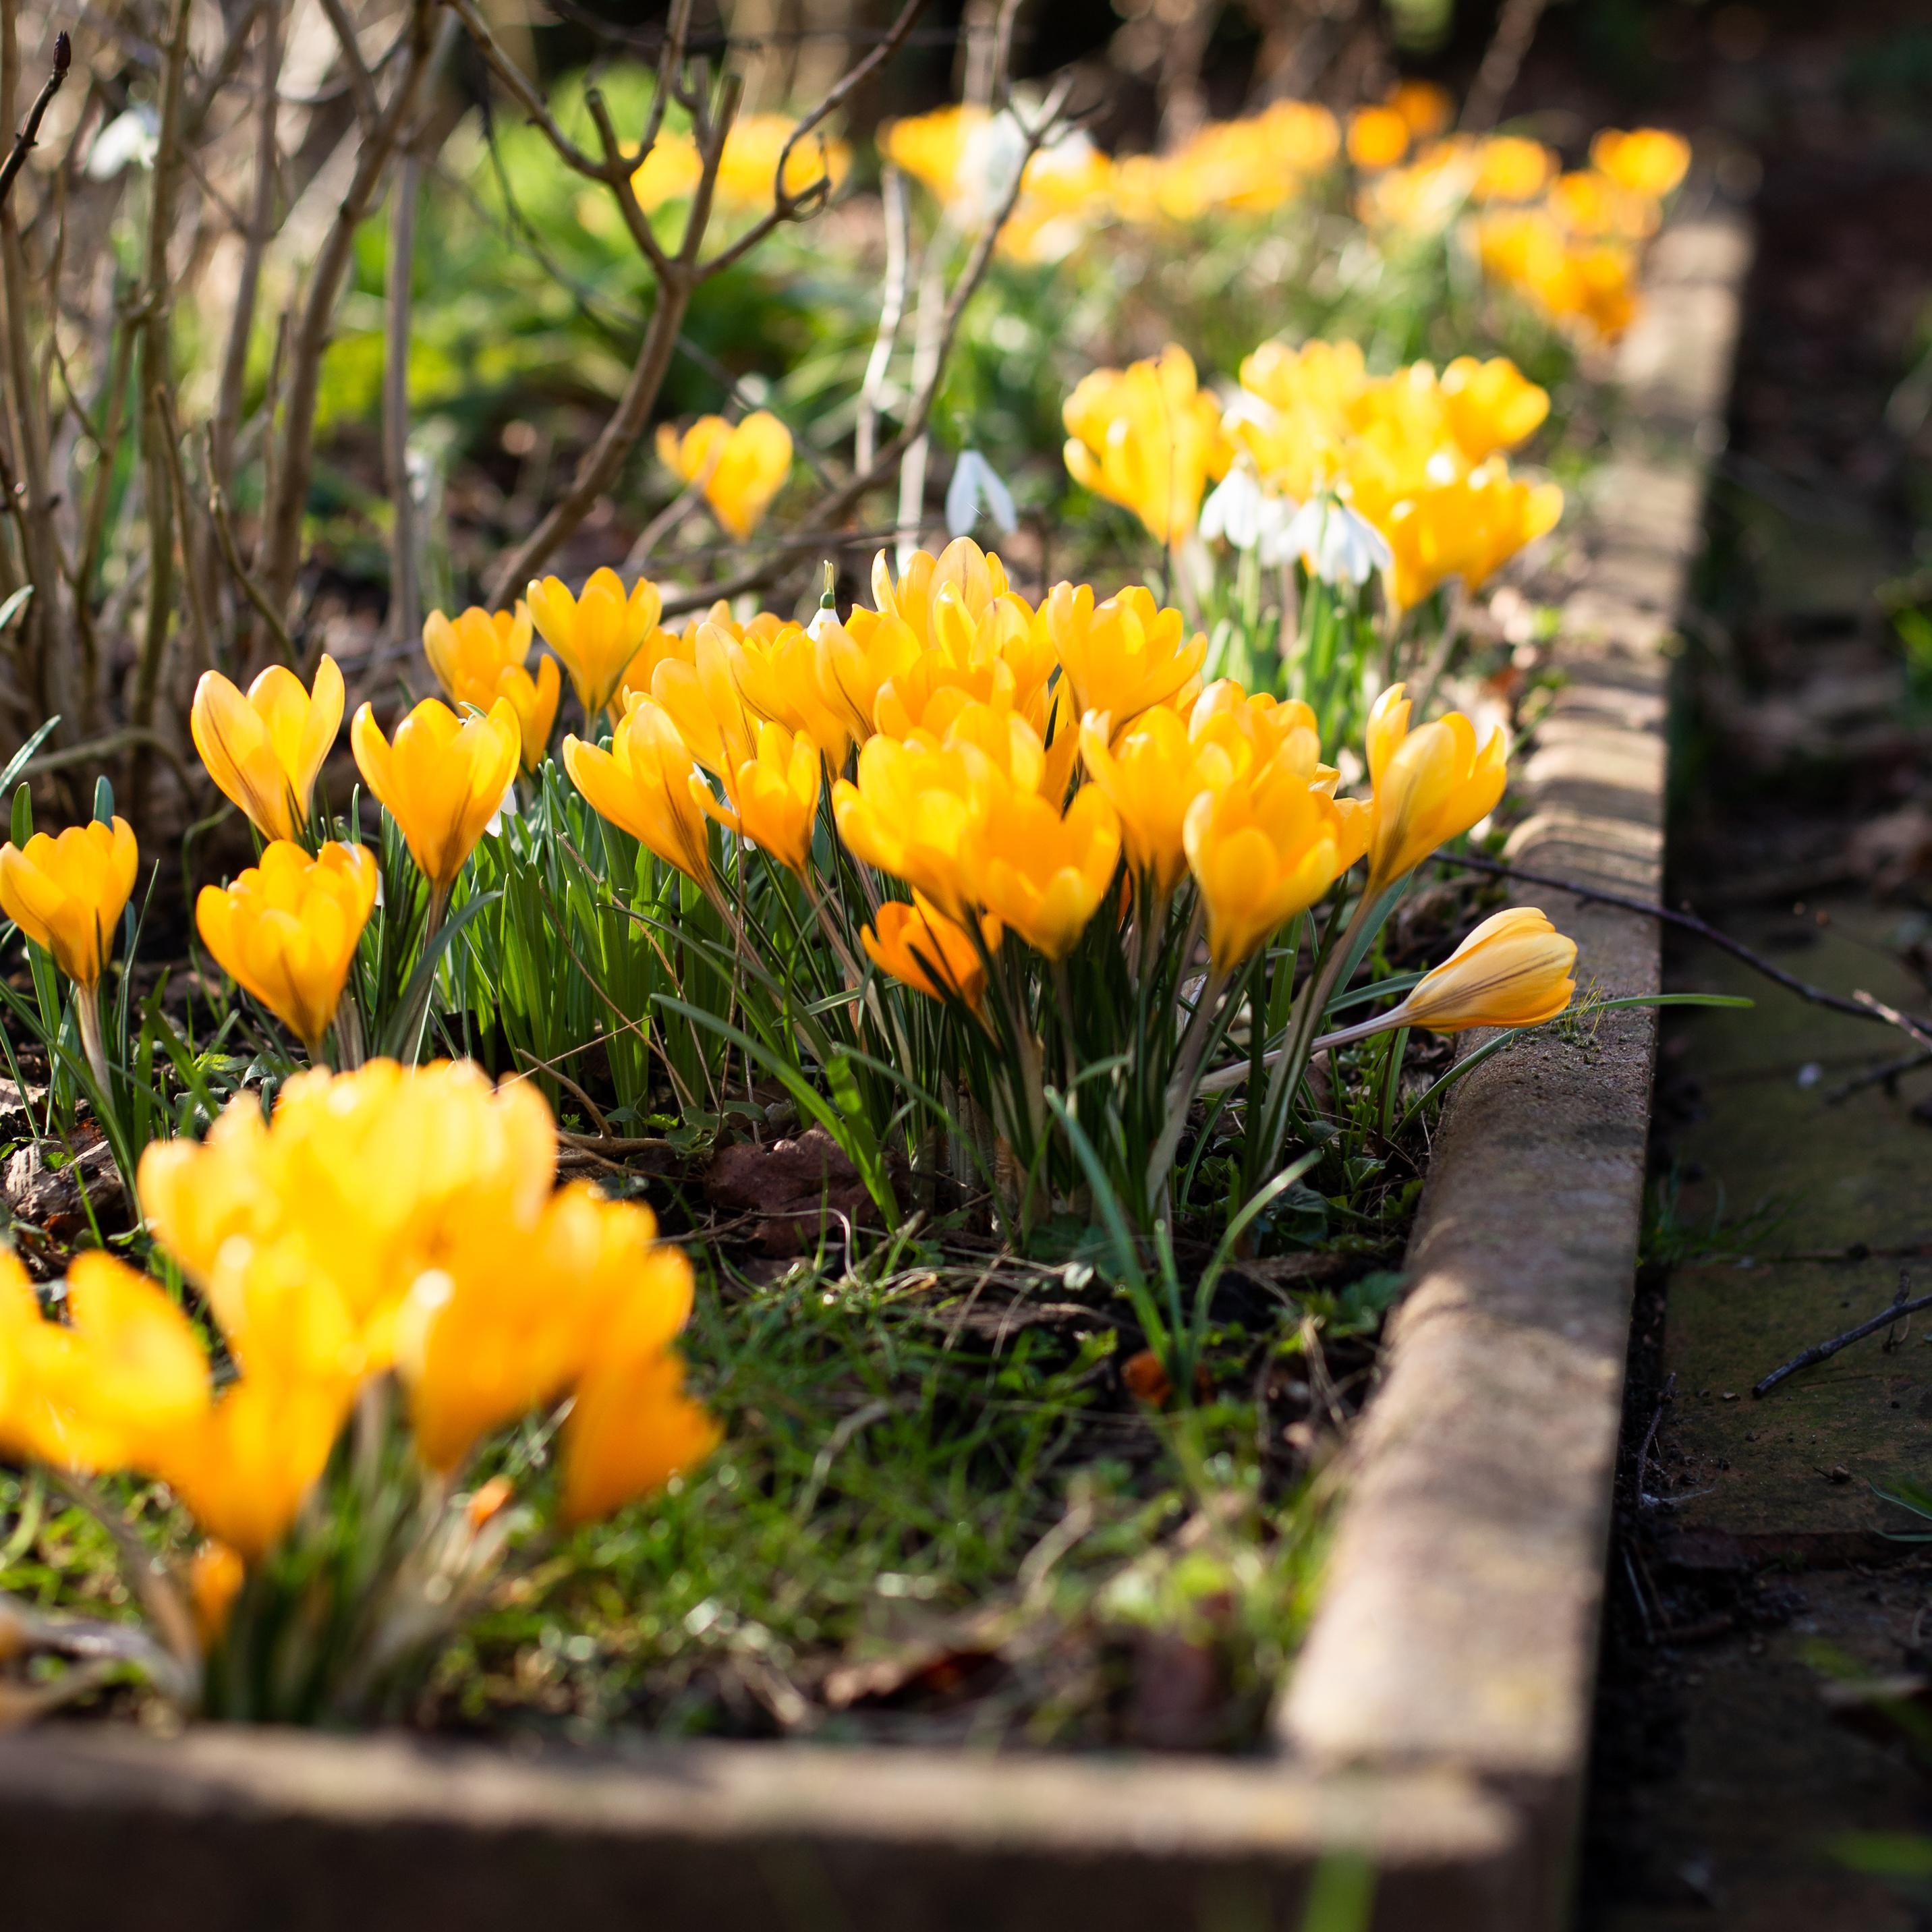 Ein paar bunte Gartenblümchen gegen tristes Wettergrau.
#Garten#gelb#Frühlingsboten